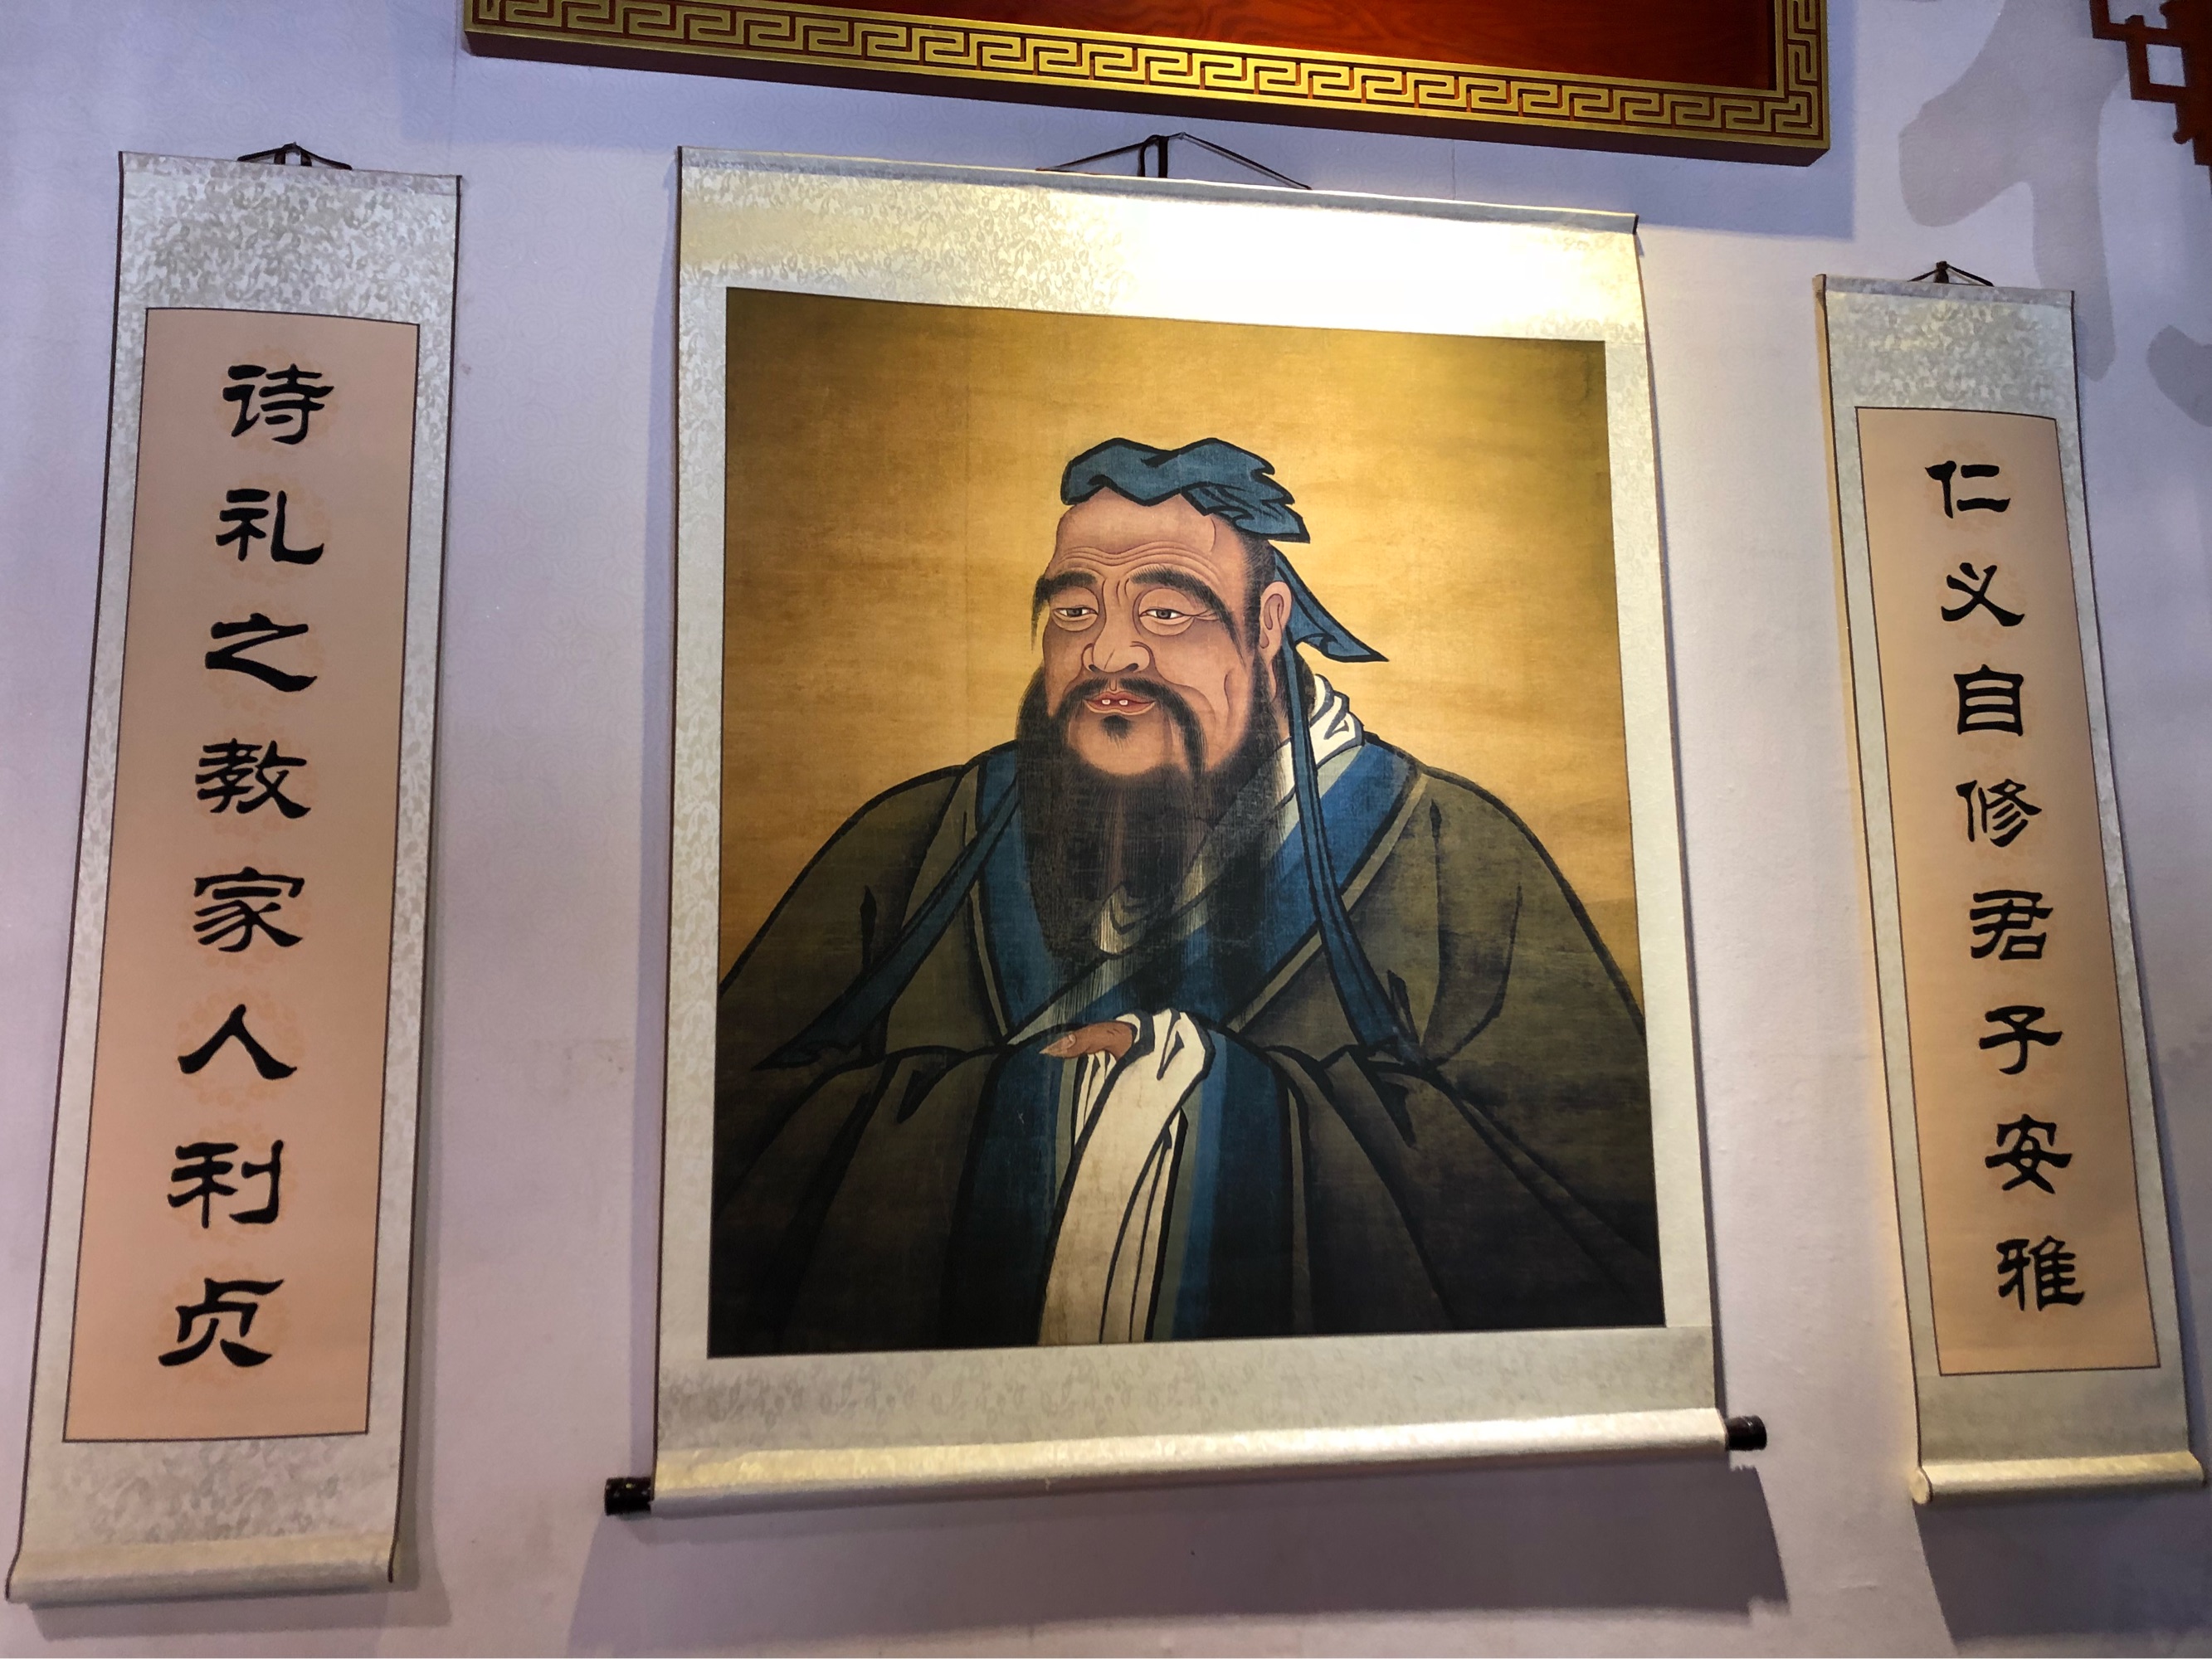 中国传统道德宝库——儒家思想文化的精华(图)